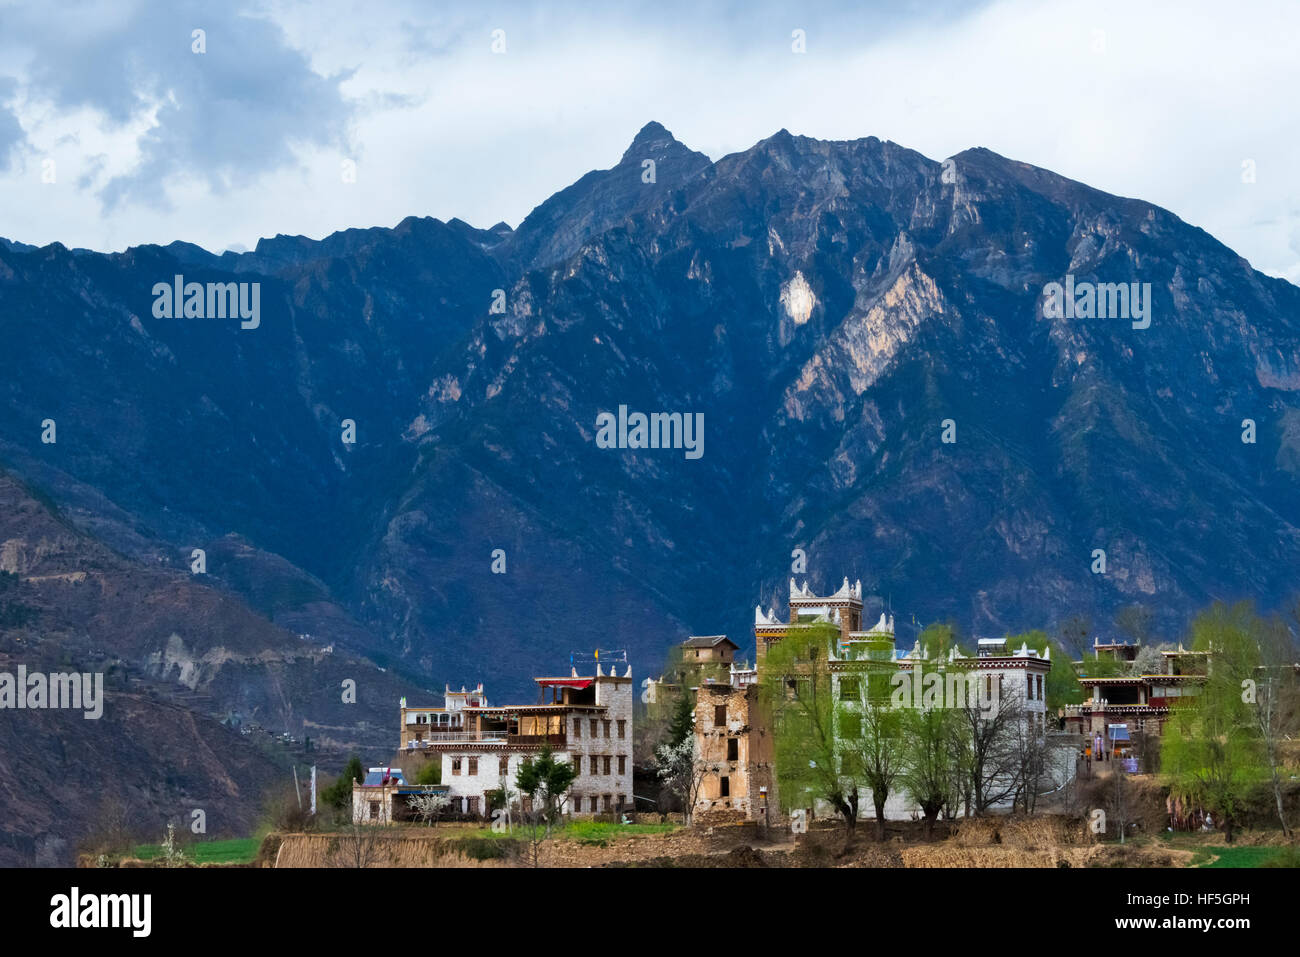 Zhonglu Tibetan village in the mountain, Danba, Sichuan Province, China Stock Photo